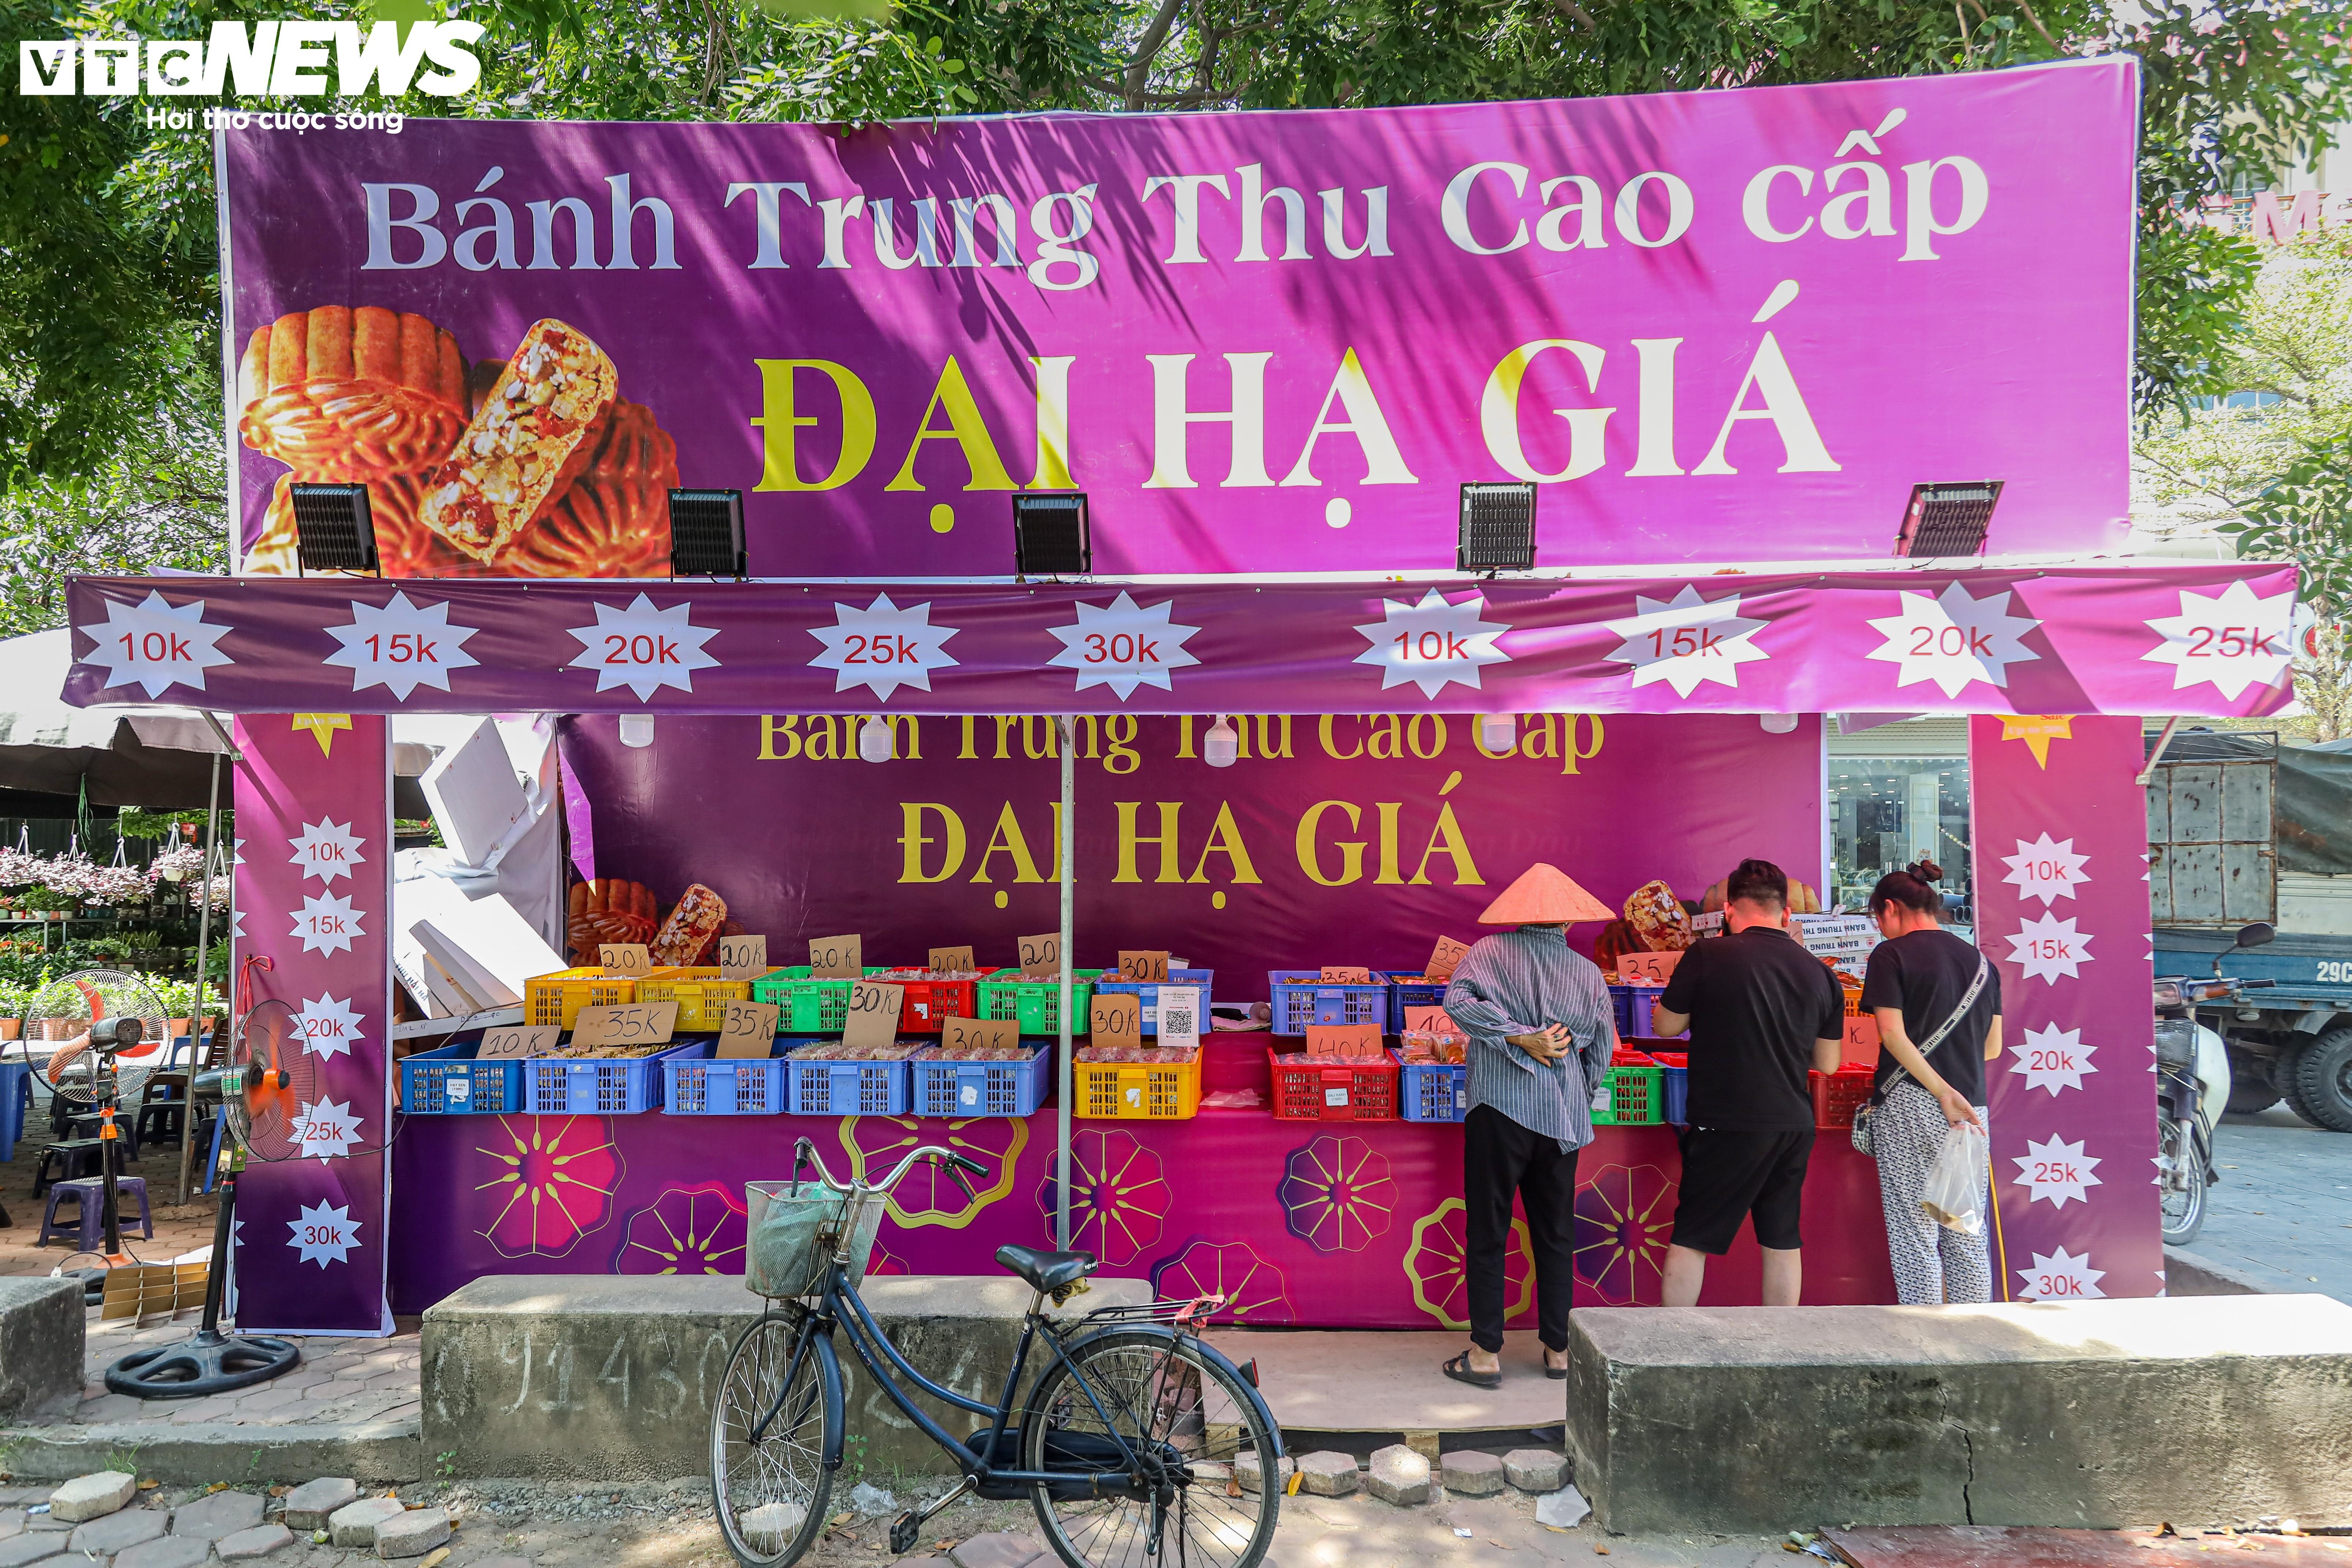 Bày bán bánh trung thu đại hạ giá được 5 ngày trên đường Tố Hữu (Hà Nội), chủ cửa hàng cho biết, lượng khách hàng tìm đến mua không nhiều, mỗi ngày cửa hàng tiêu thụ được gần 1.000 bánh.